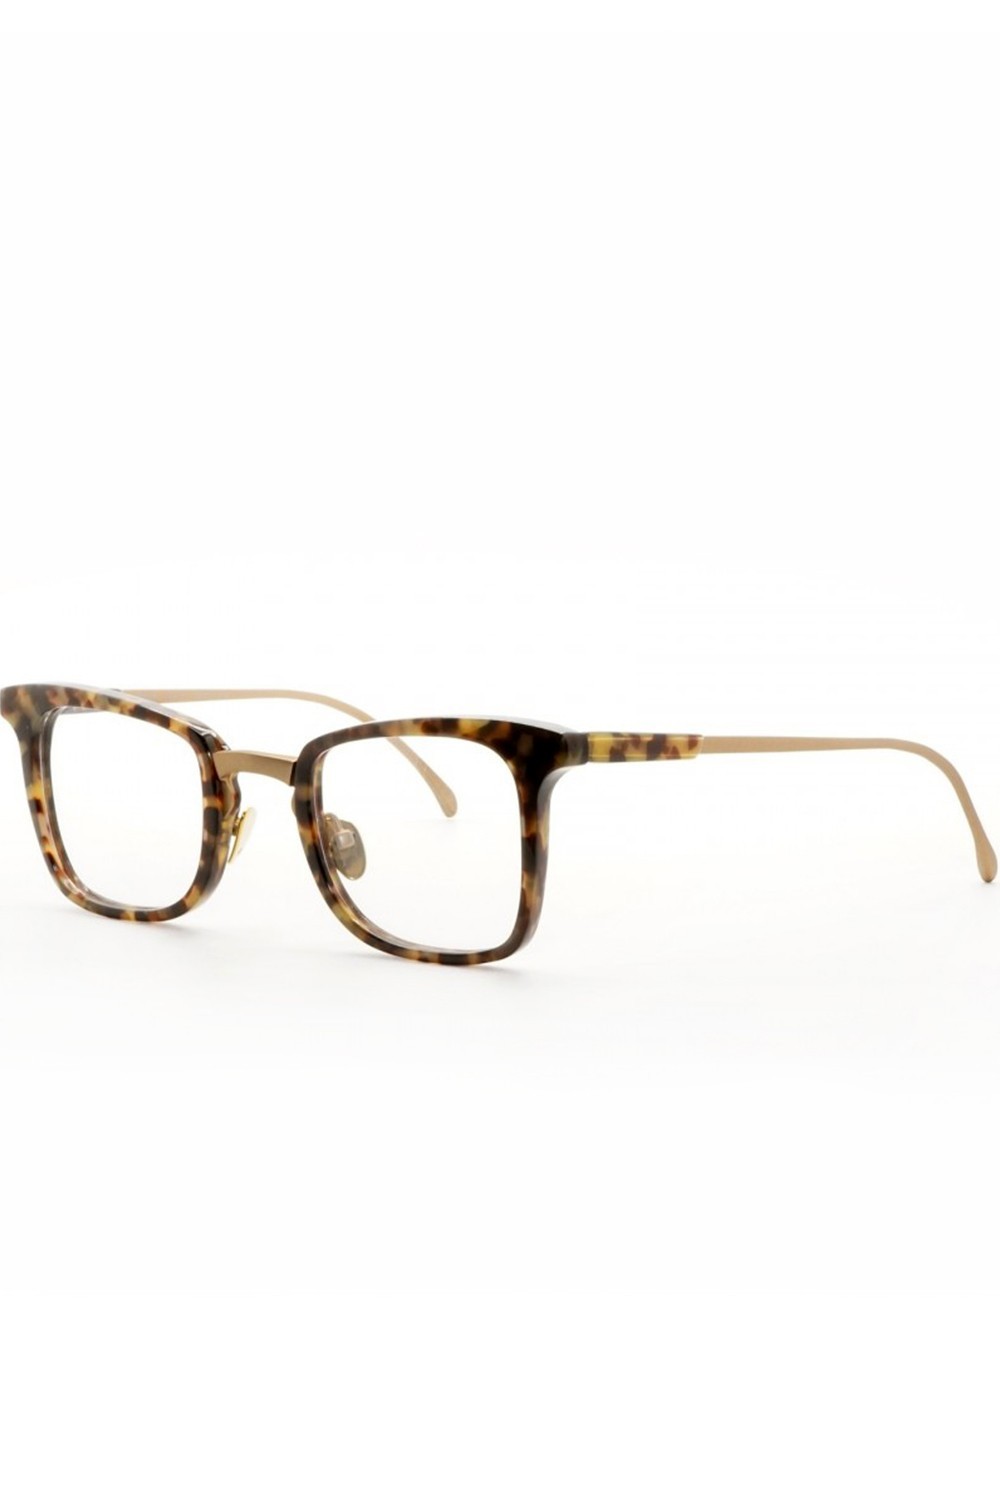 AM Eyewear - Occhiali da vista combinati squadrati unisex tartarugato - LENNY